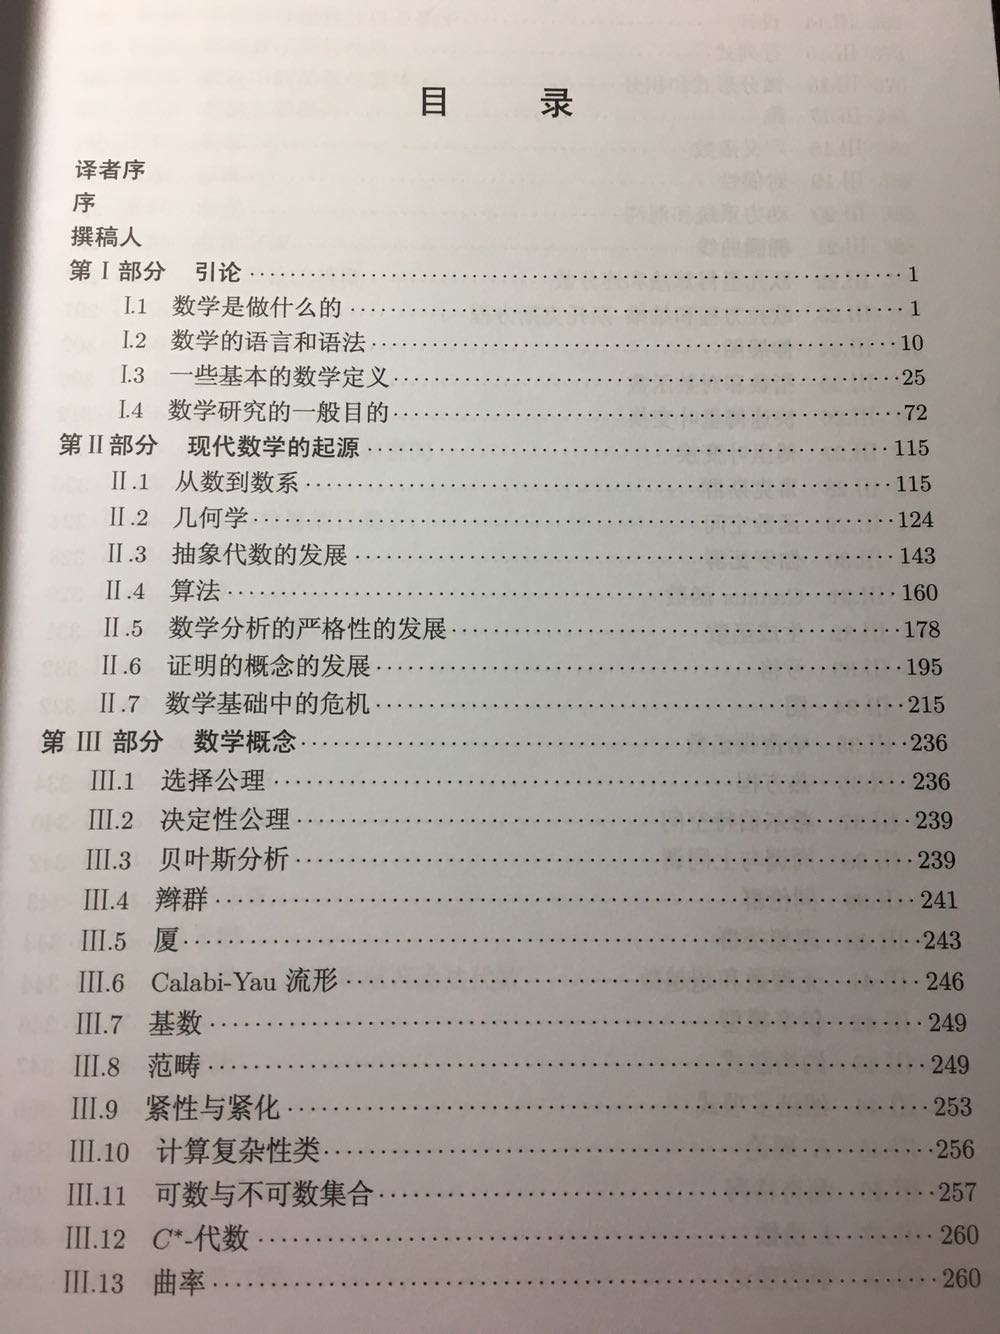 这套书是从北京发来的，外面包装完好，里面的塑封裂了一些书底留了点黑色指印，整体还算干净整洁。晒下三卷书的目录首页和译者，内容广泛，个人认为值得读下去，值得收藏。